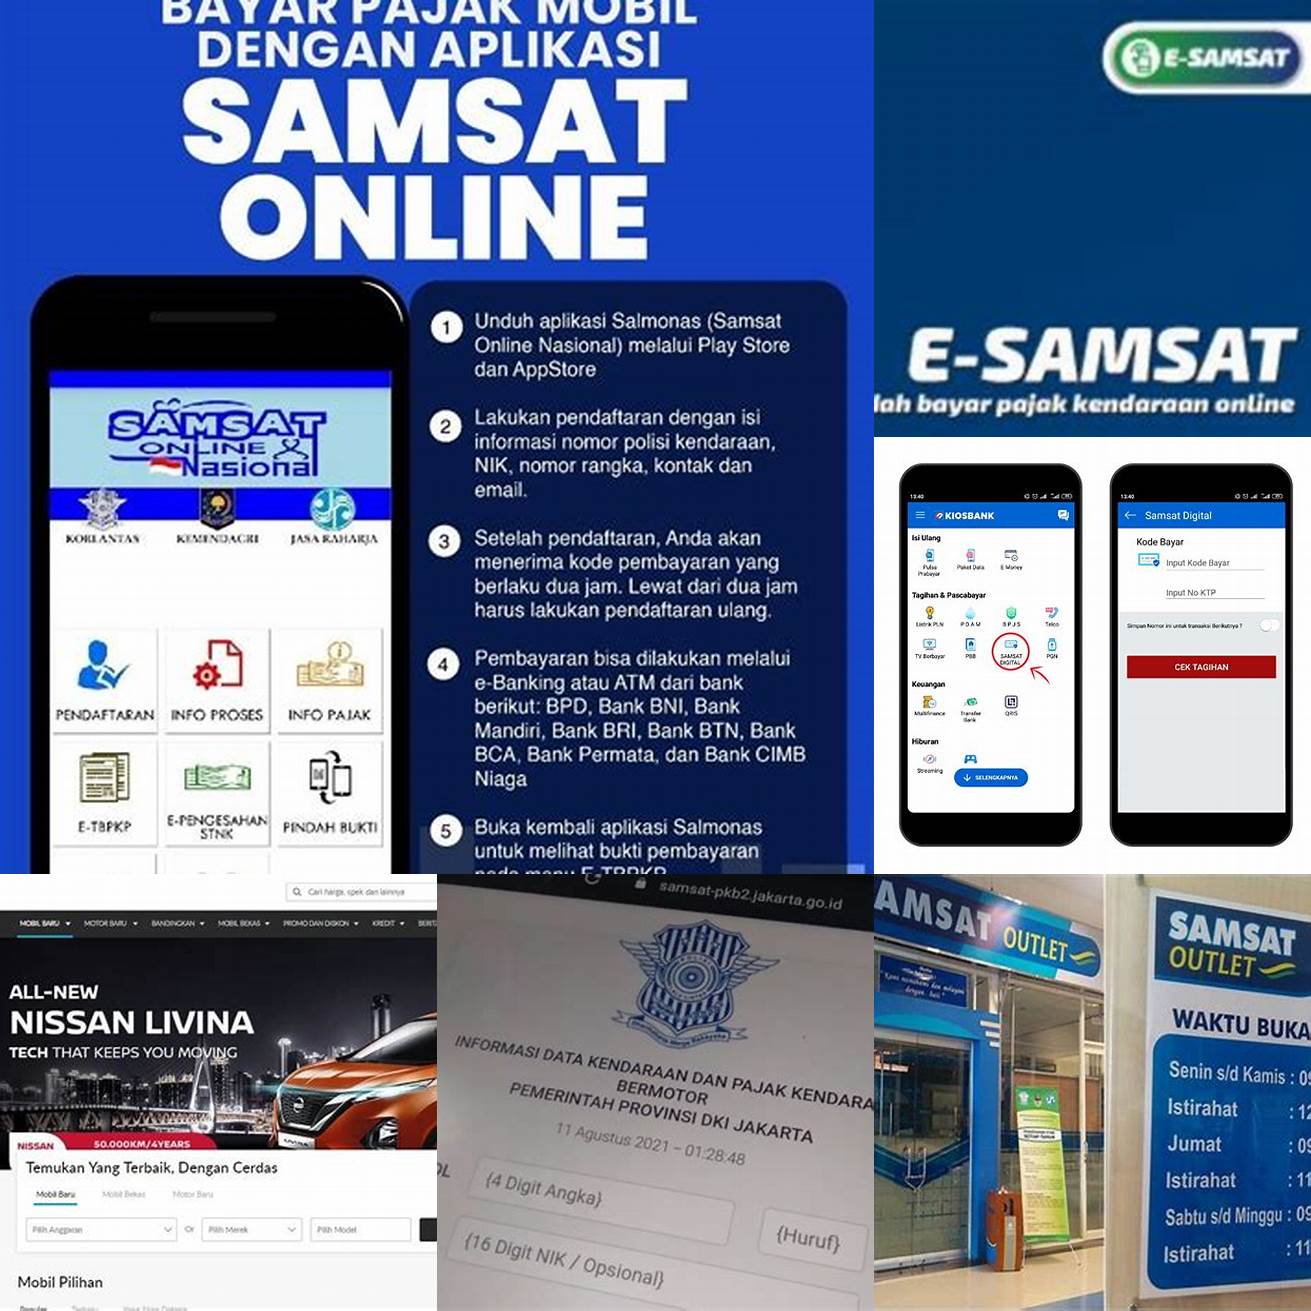 1 Kunjungi situs web SAMSAT yang berada di wilayah anda